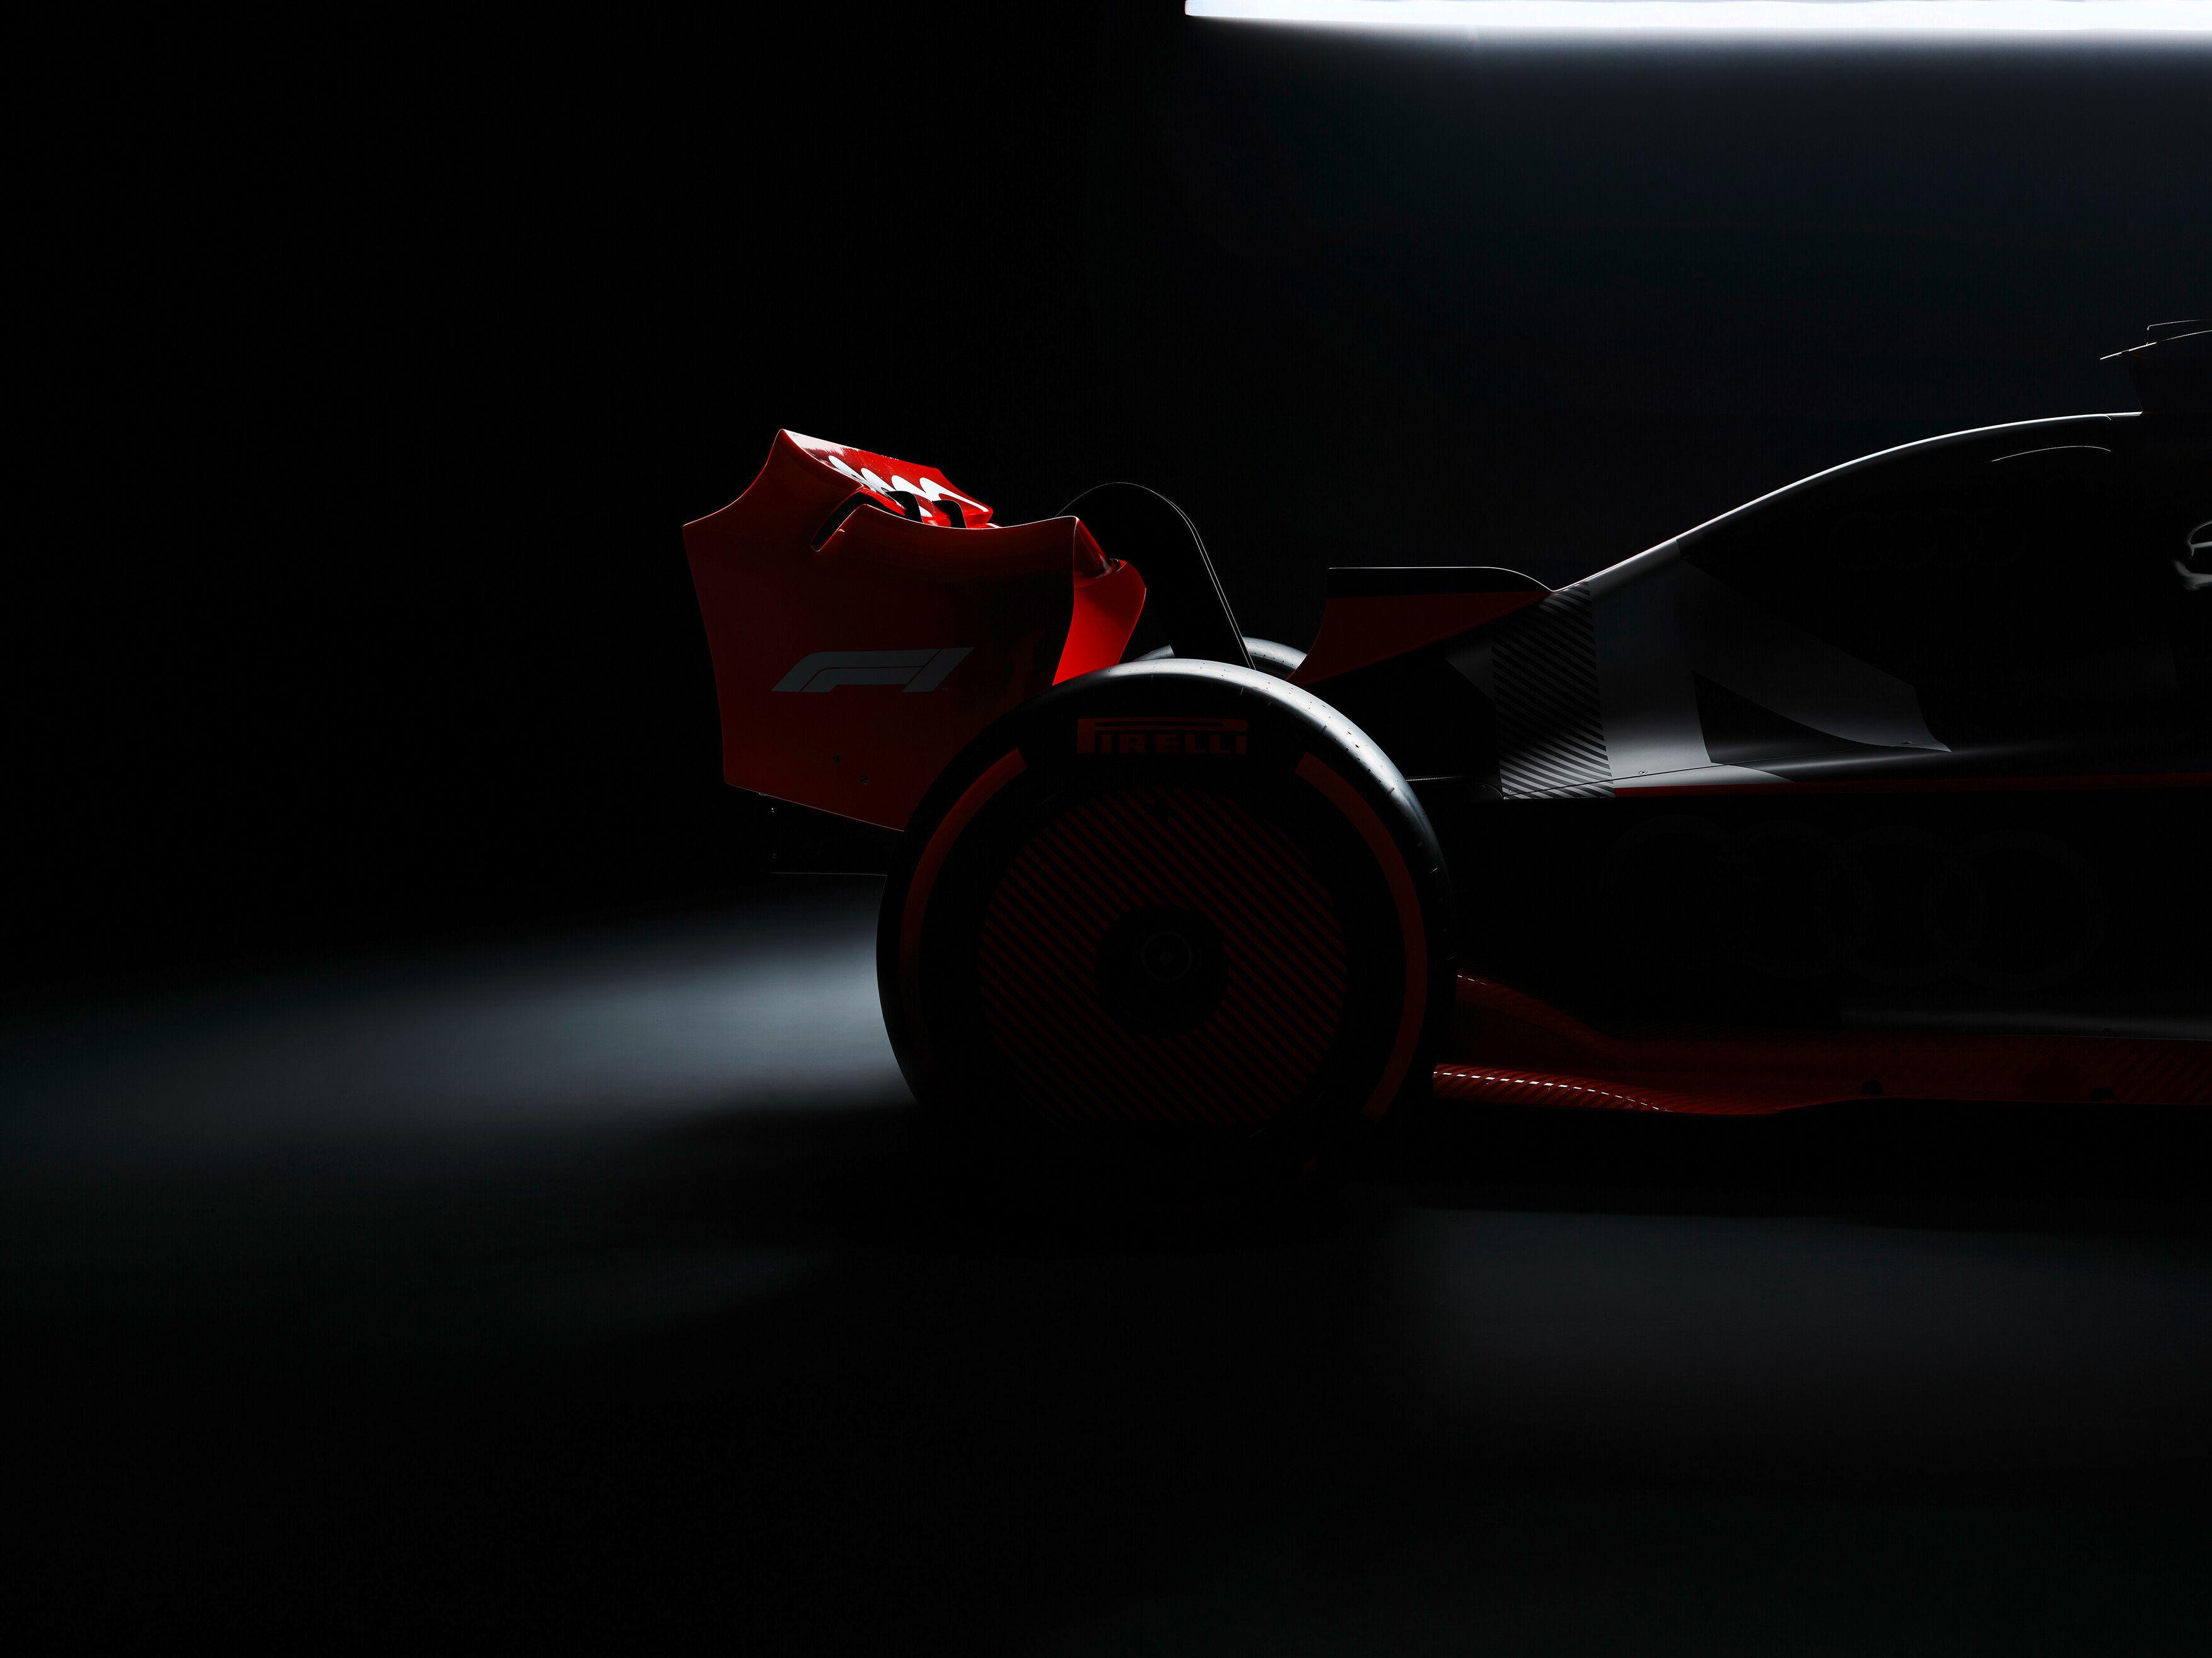 ऑडी ने फॉर्मूला वन में प्रवेश किया: 2026 विश्व F1 चैम्पियनशिप में डेब्यू करने के लिए